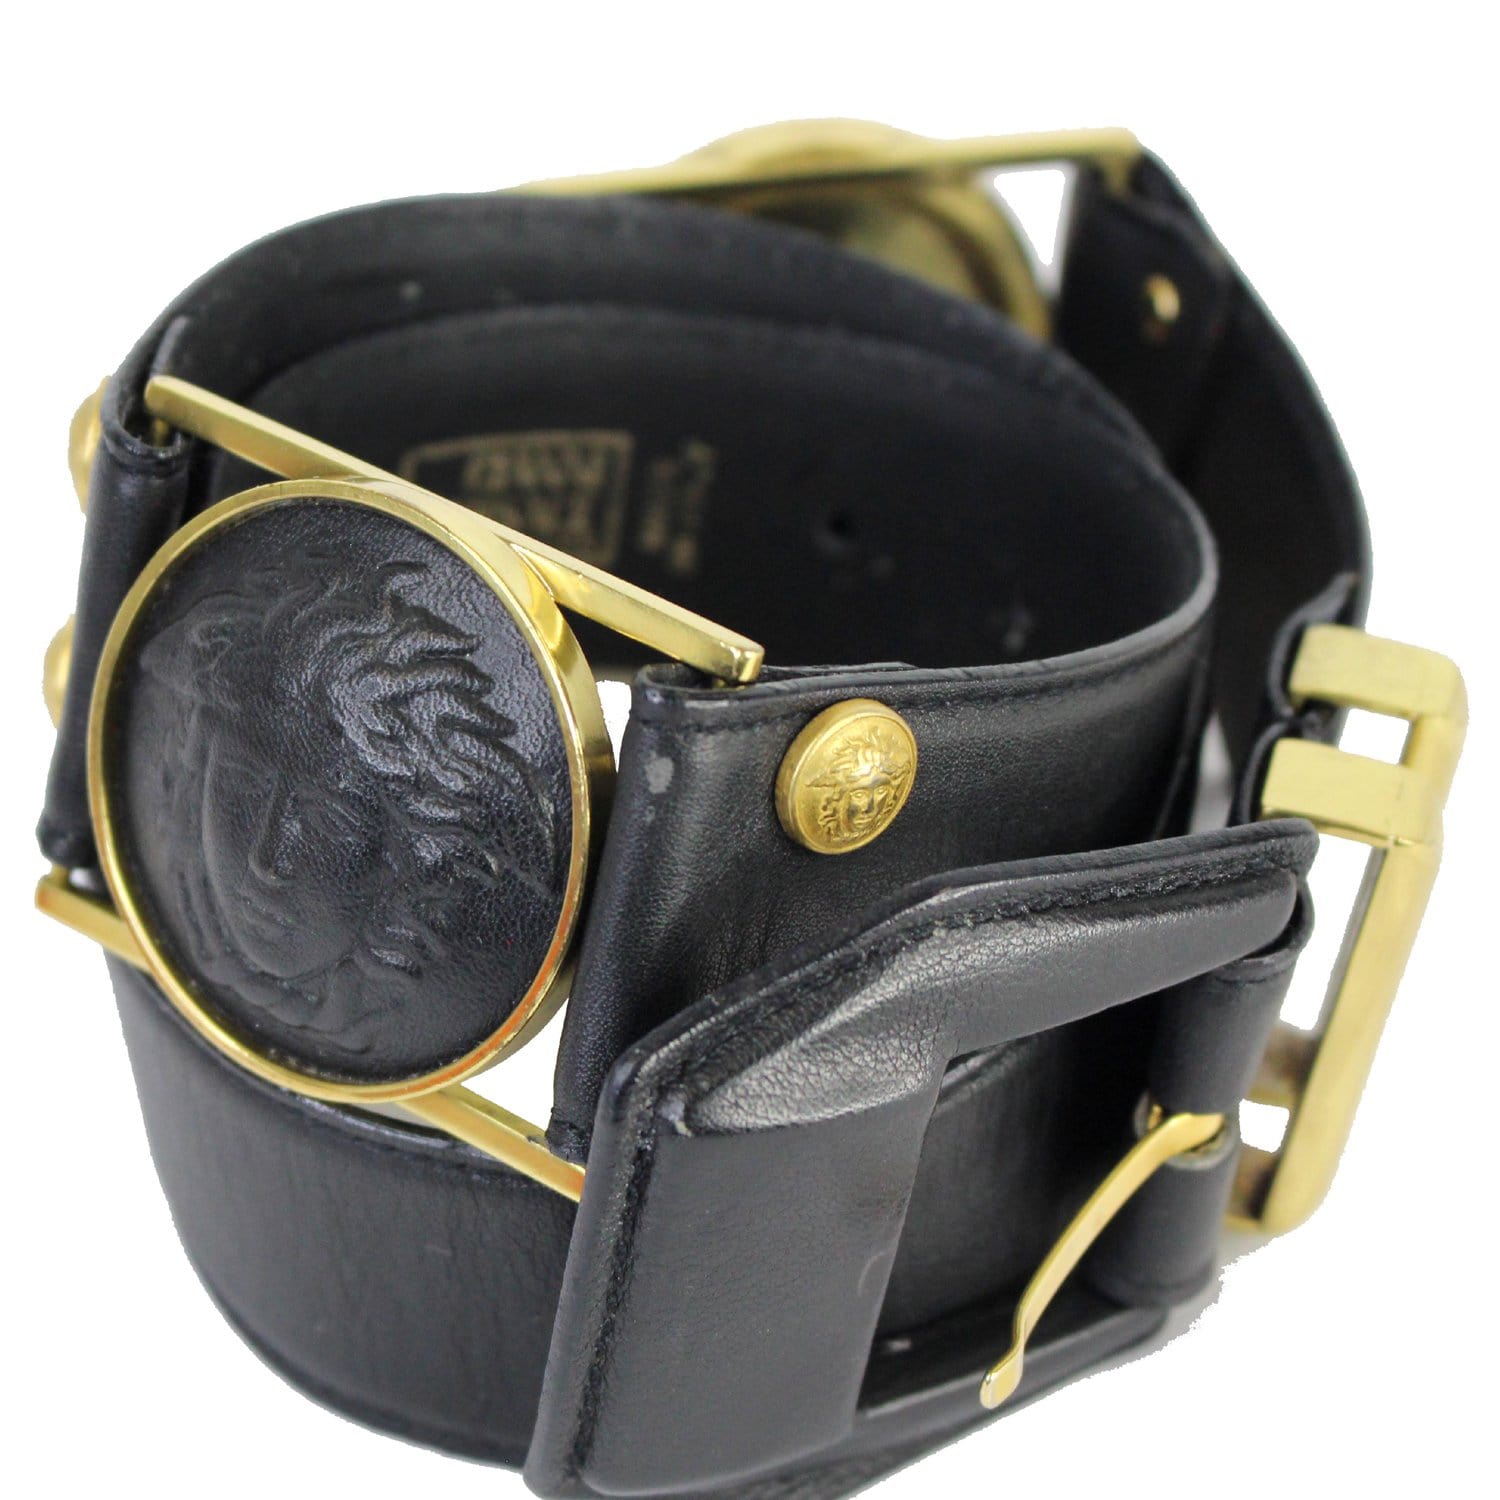 Versace Medusa Gold Buckle Black Leather Belt